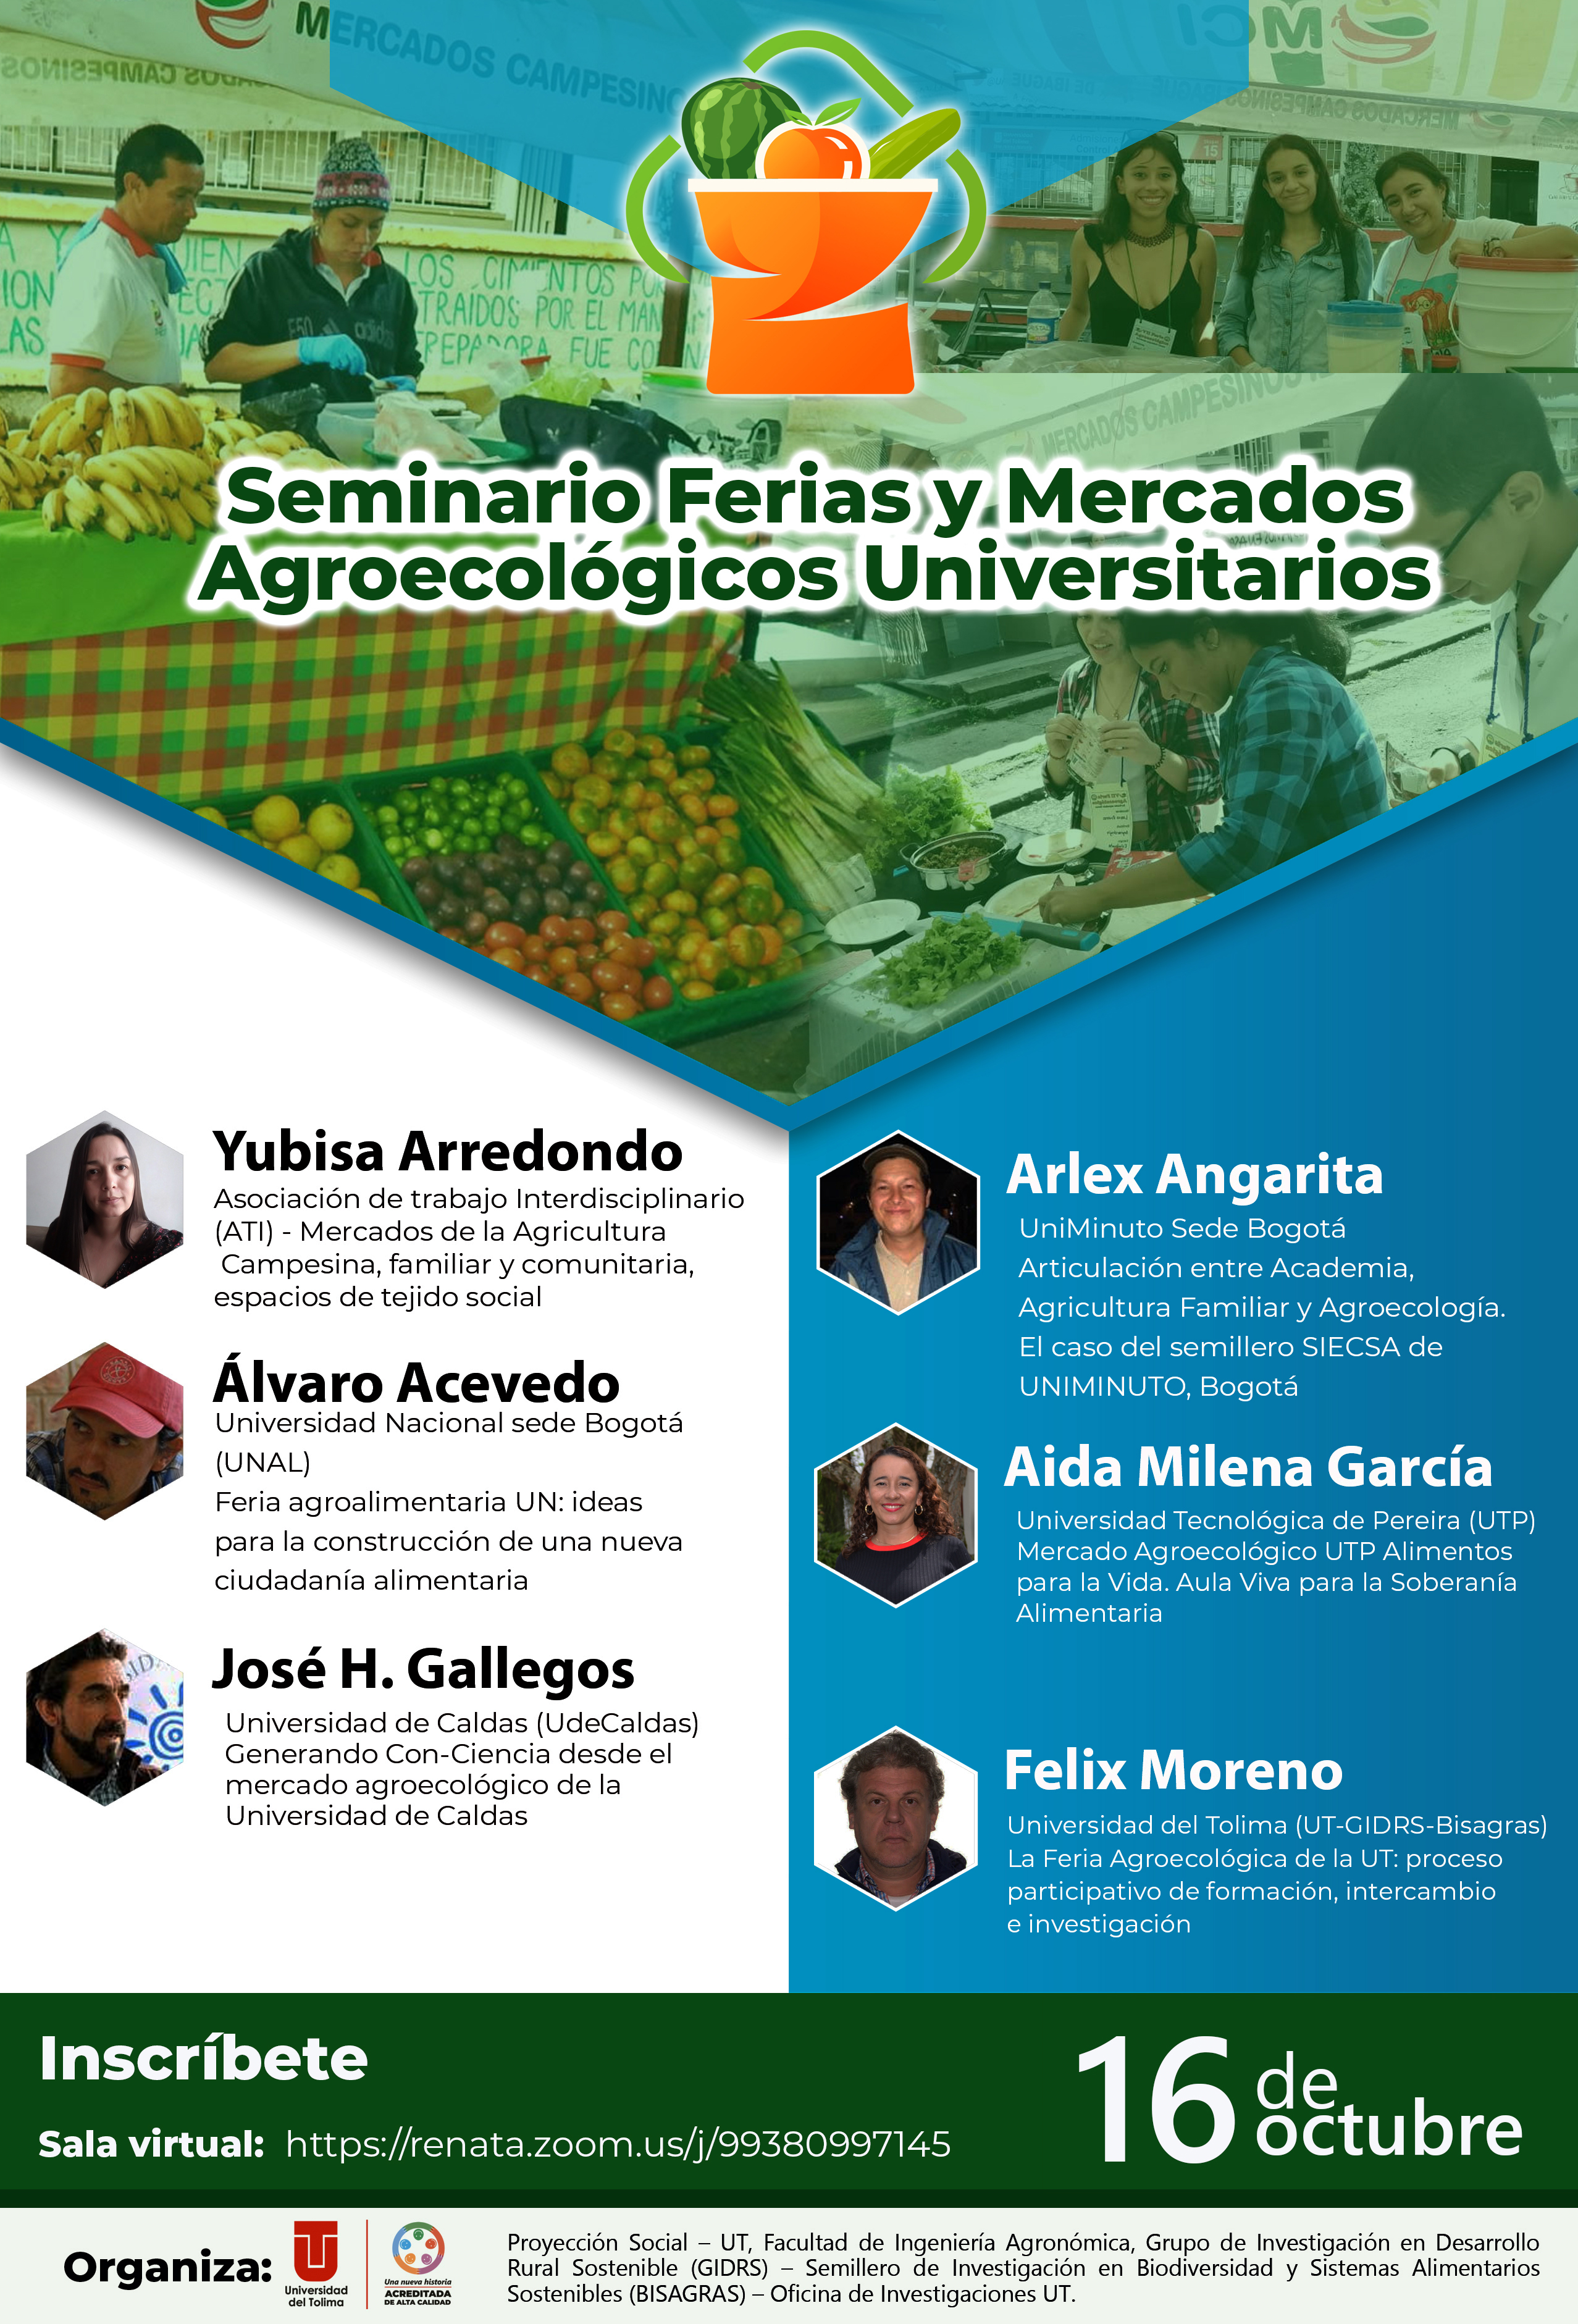 Ferias y Mercados Universitarios Agroecologicos1